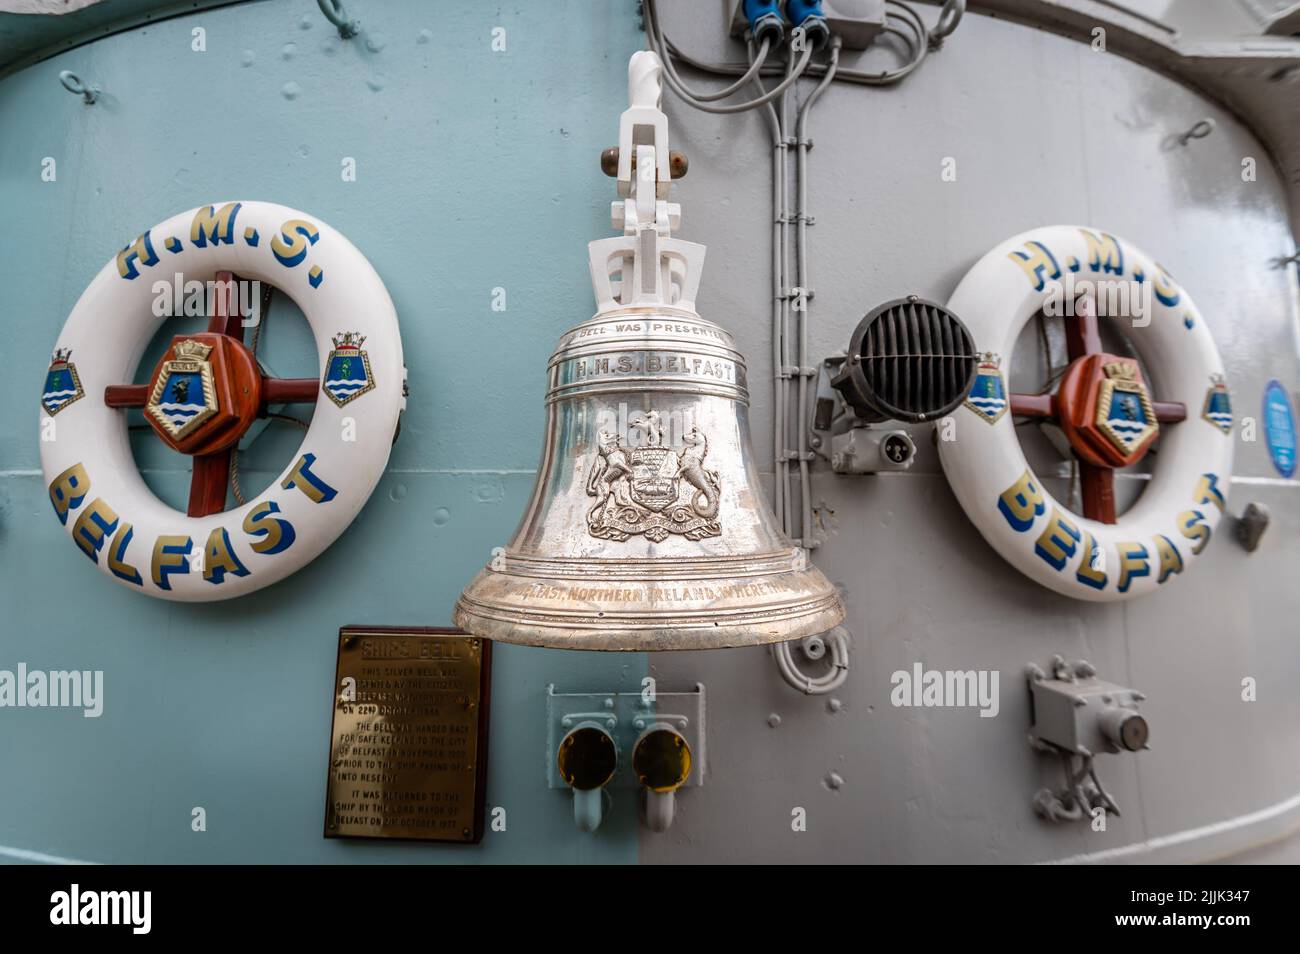 La campana a bordo del HMS Belfast, Londres, Reino Unido Foto de stock